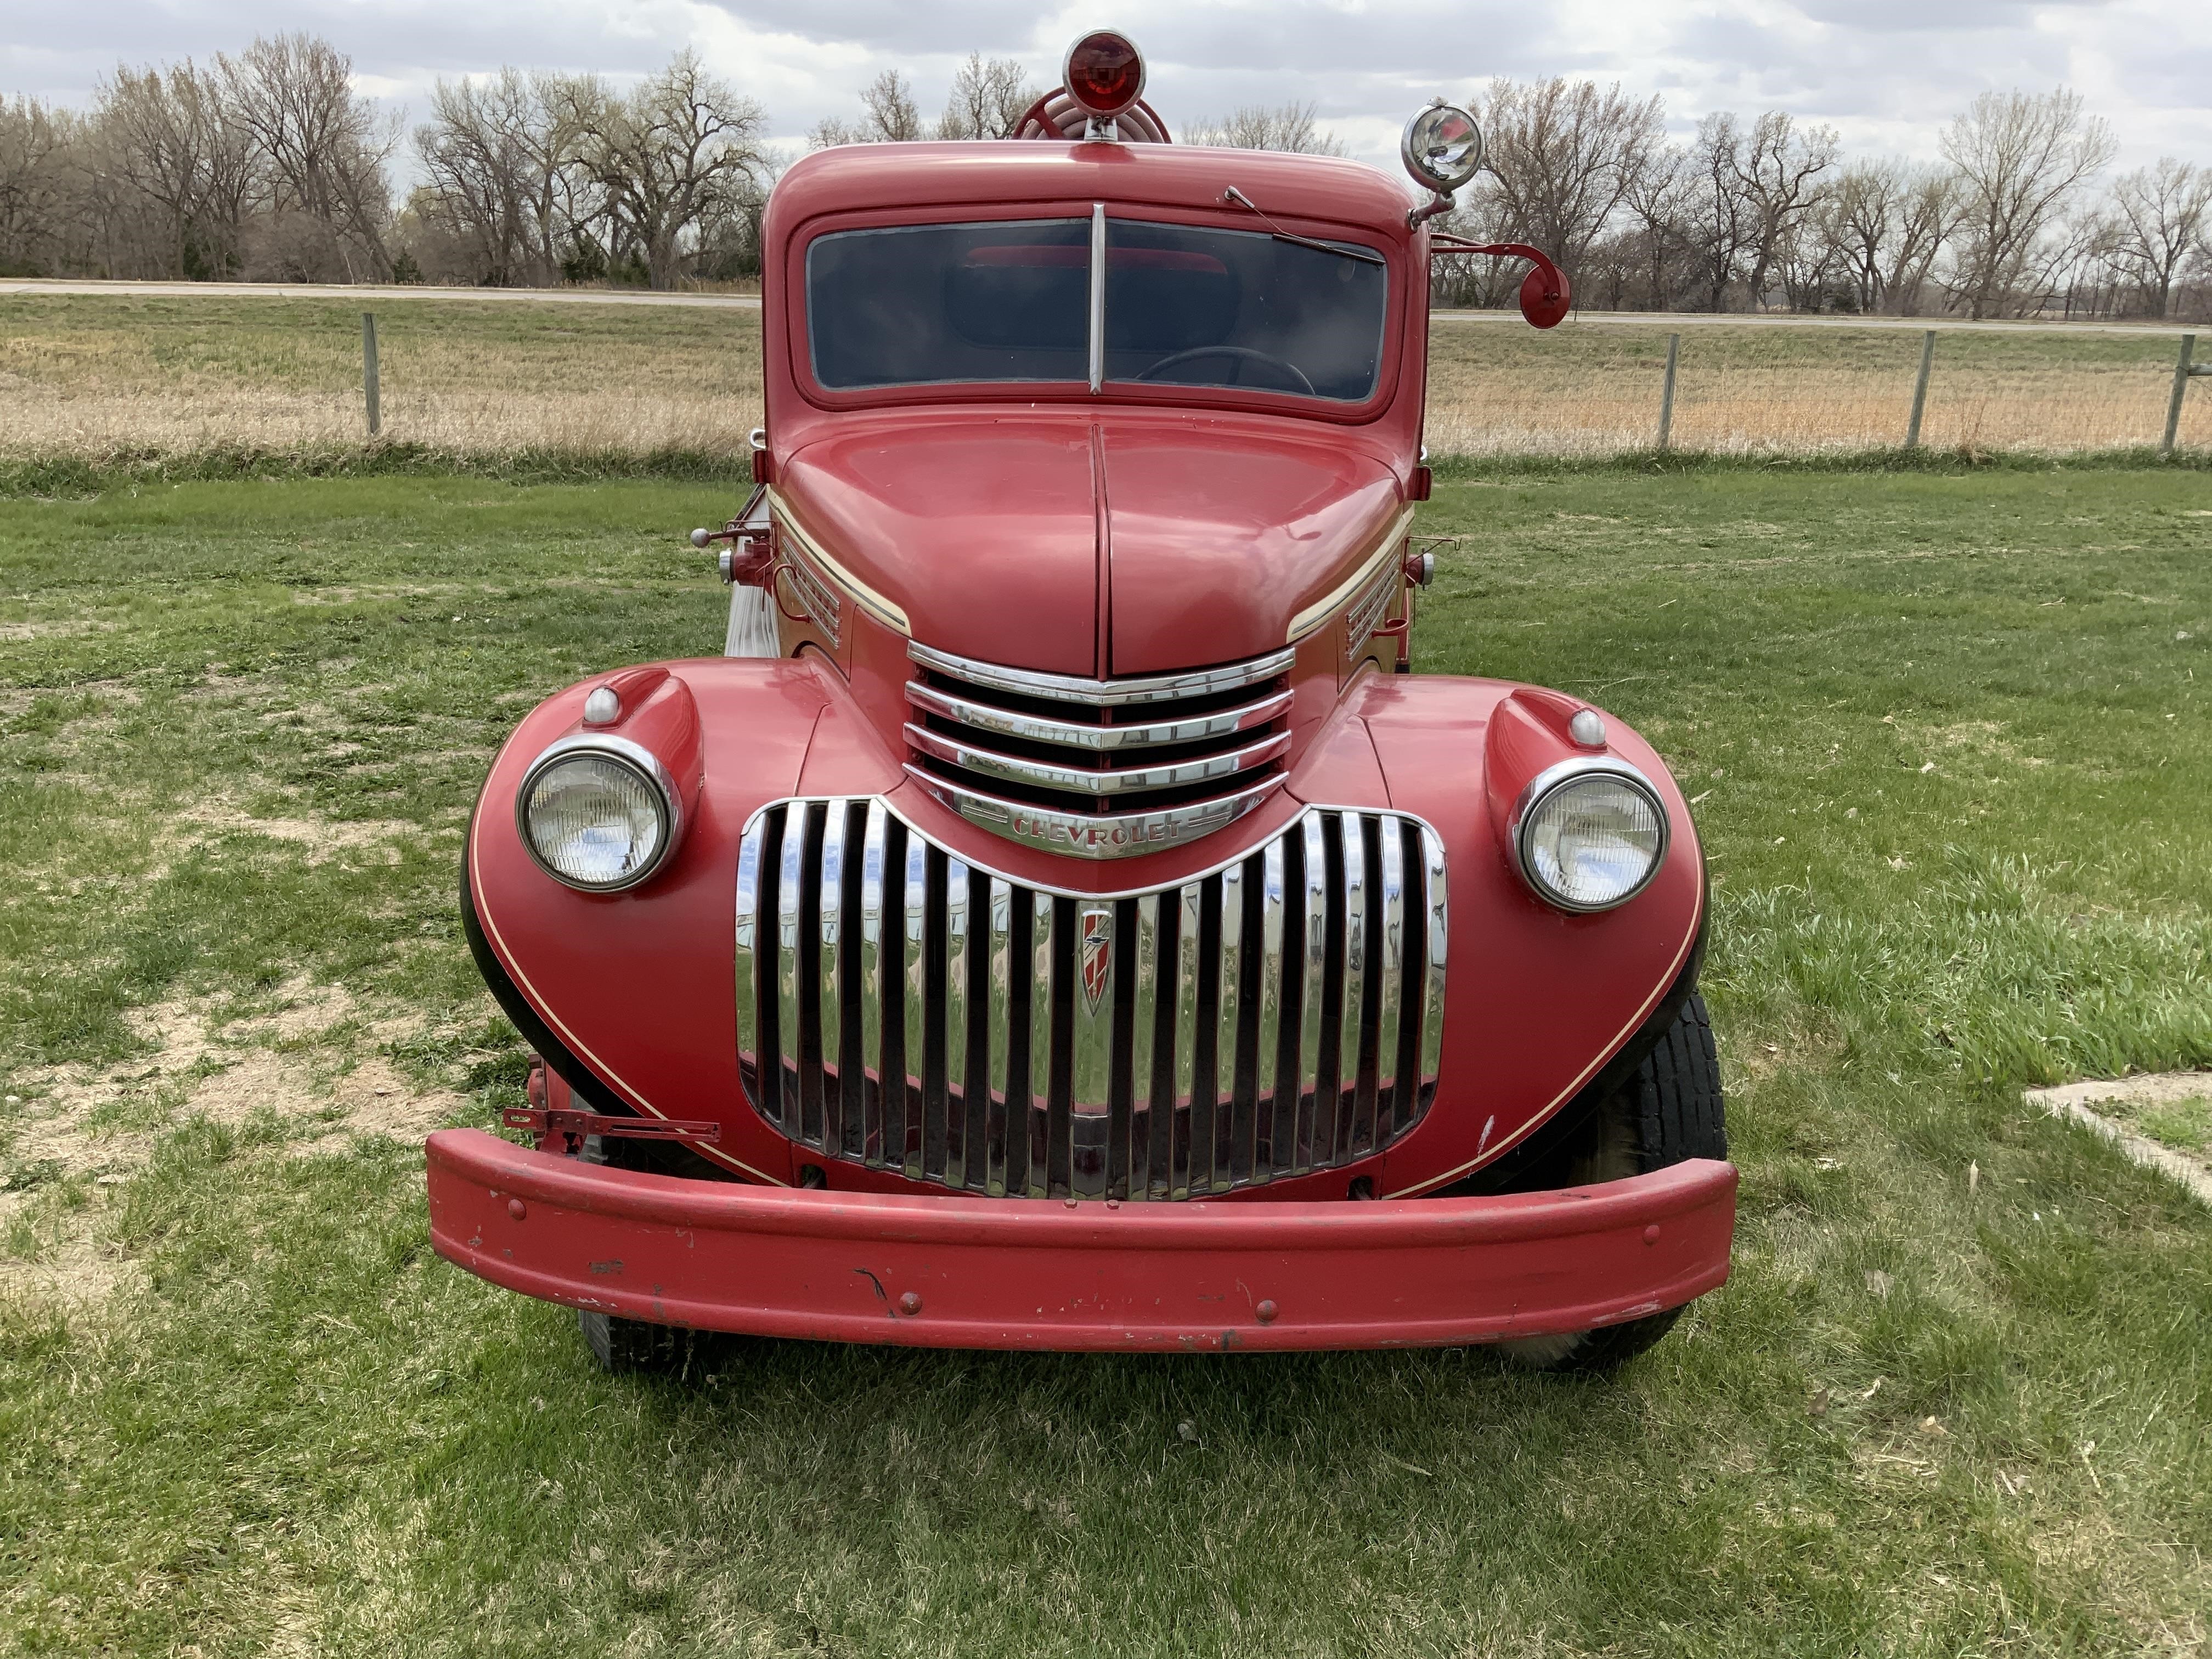 1946 4x4 chevy truck